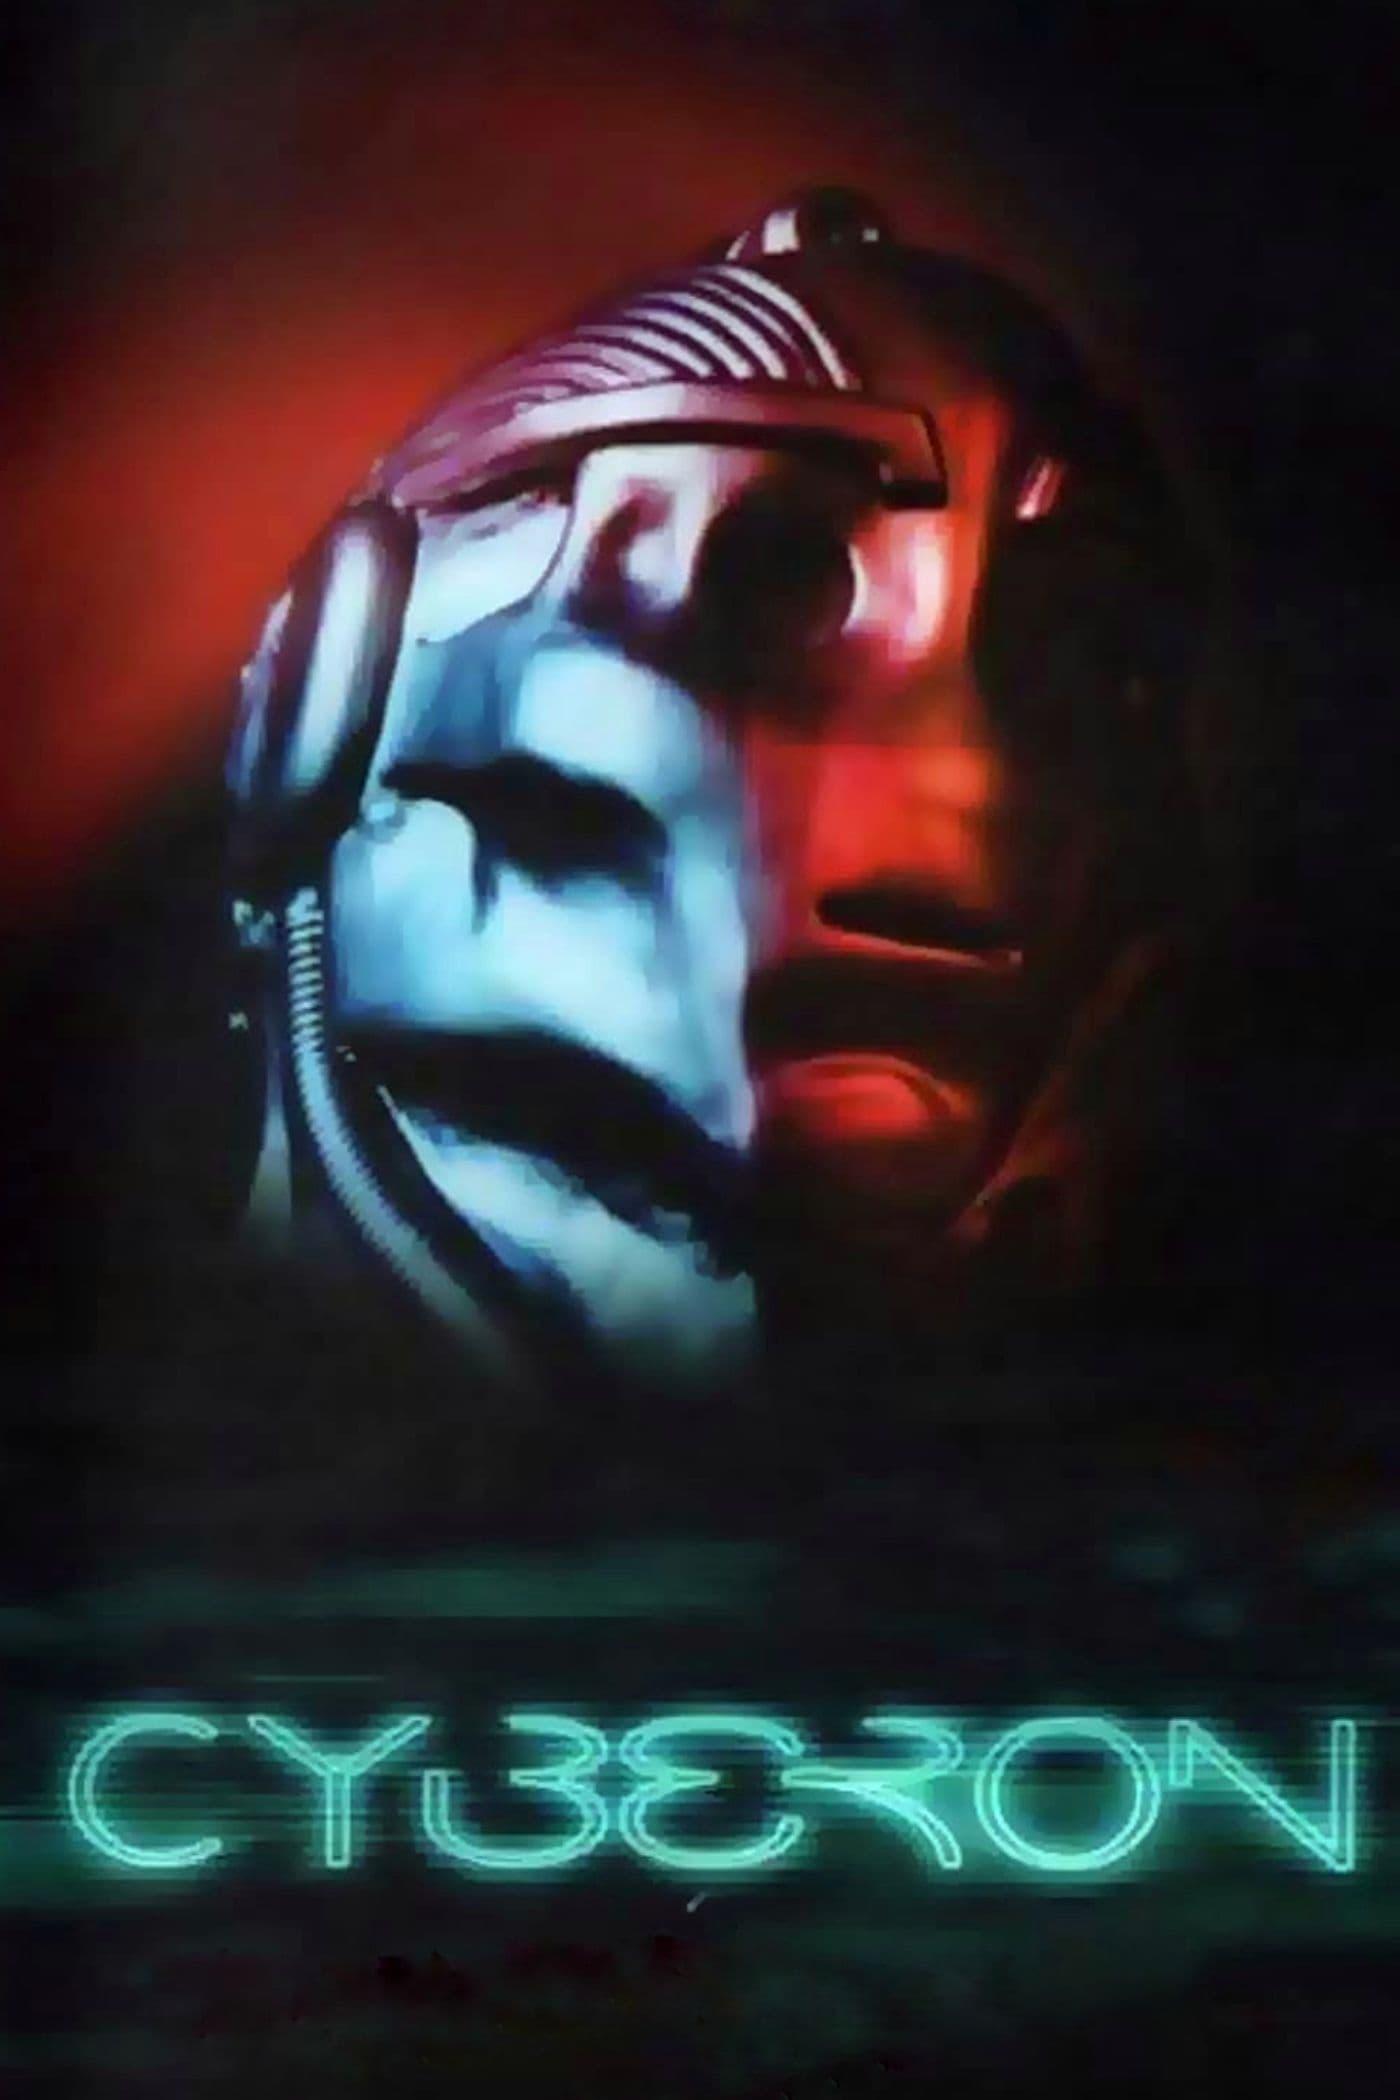 Cyberon poster